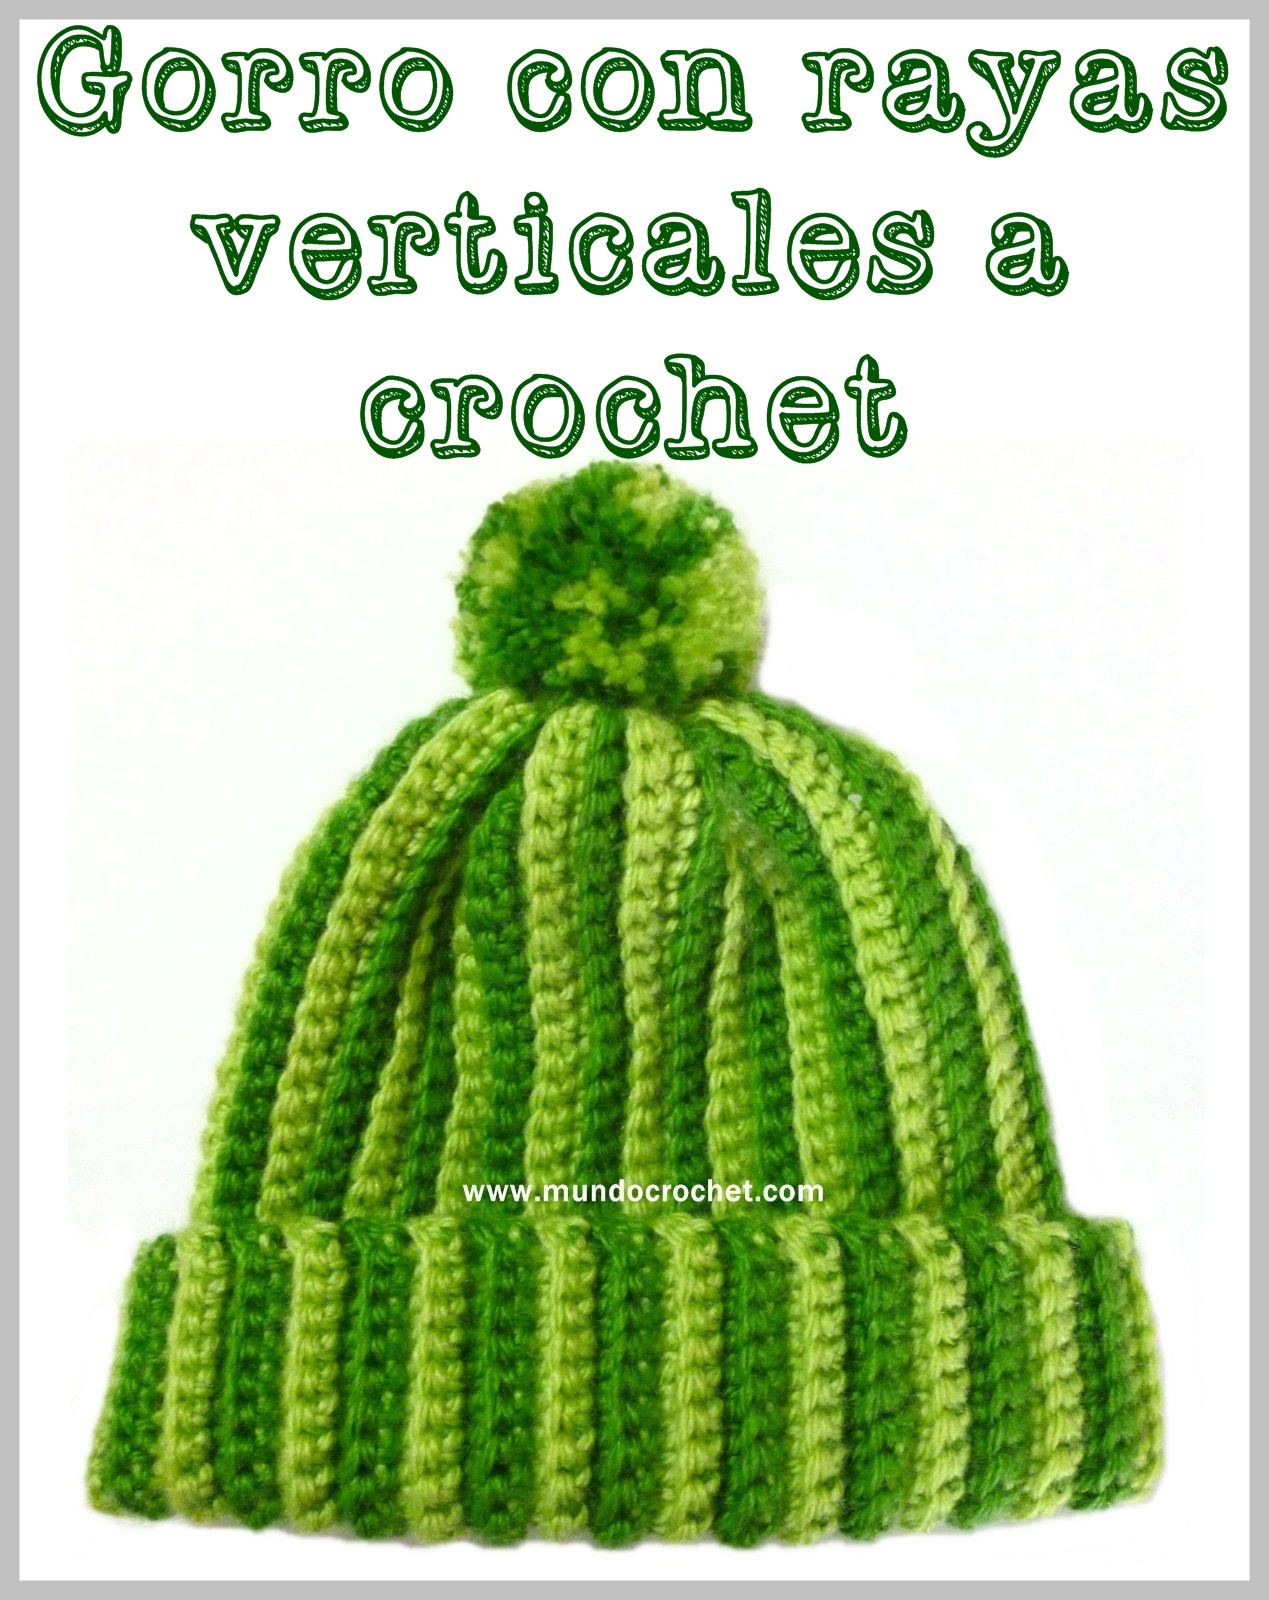 Preparación Petición Civilizar Gorro a crochet rayas verticales - Gorro a crochet principiantes